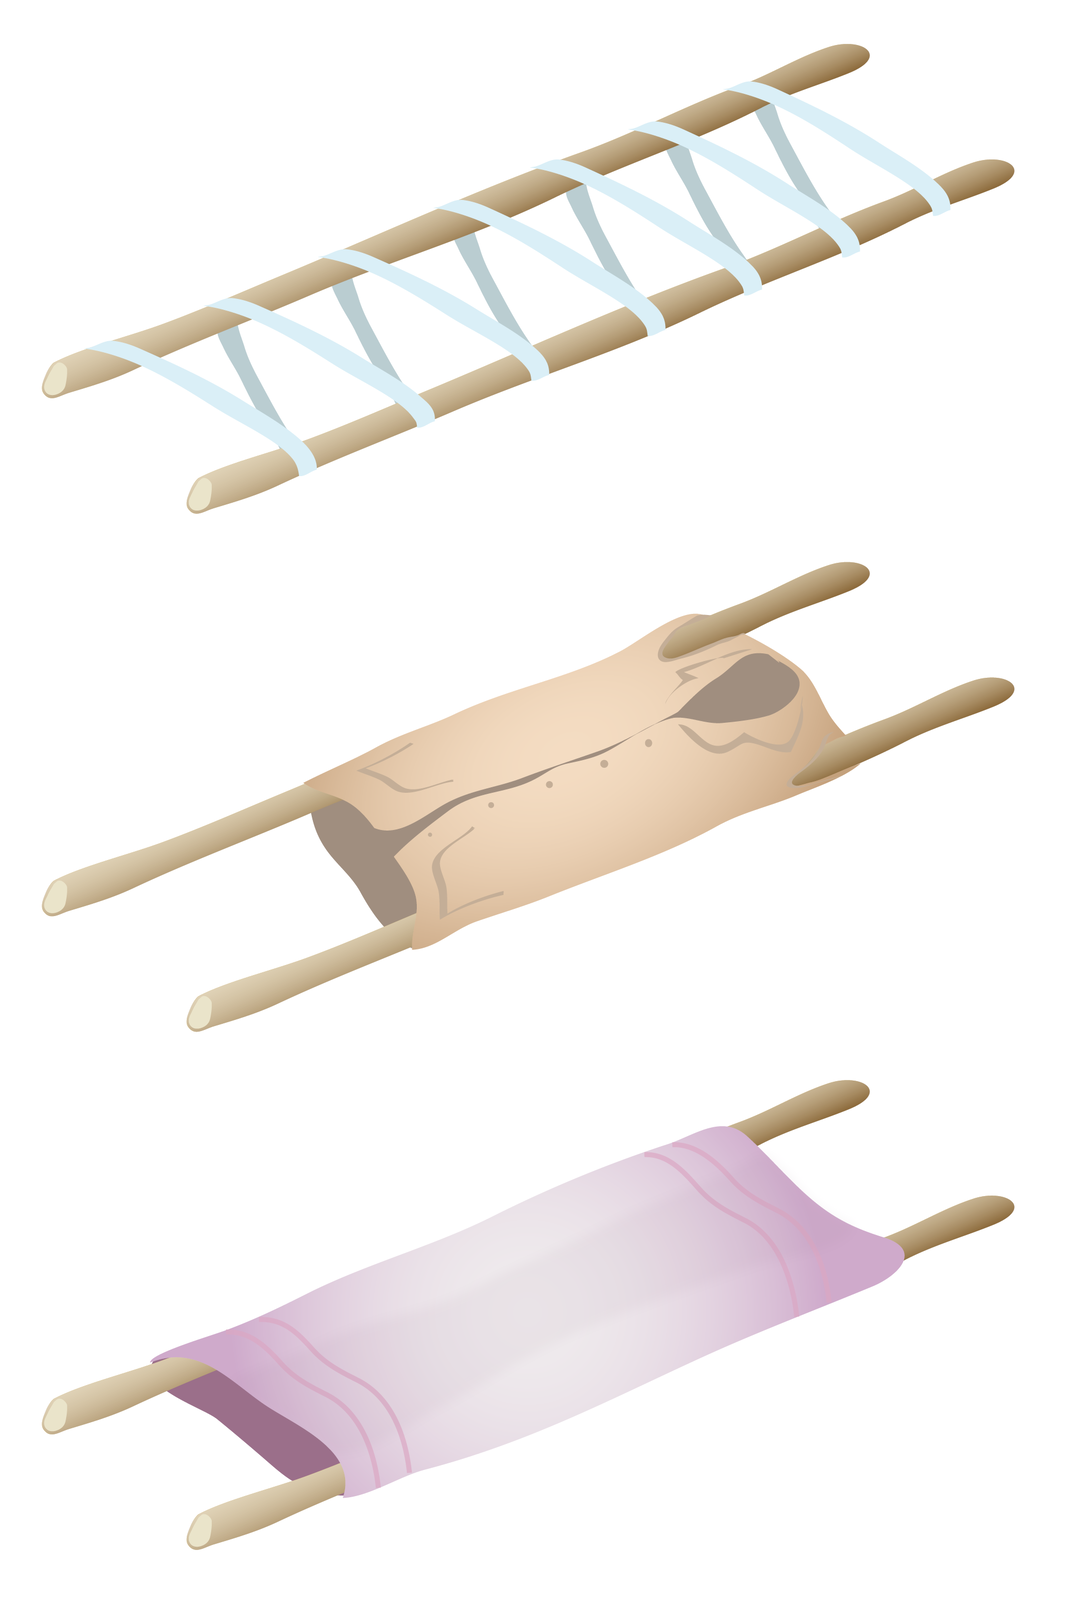 Ilustracja przedstawia trzy przykłady prowizorycznych noszy. Każde nosze zbudowane są na bazie dwóch długich kijów stanowiących stelaż. Połączenie drewnianych kijów jest różnorodne. W pierwszym przypadku kije połączone są szerokim pasem owiniętym wokół kijów tworząc ukośną drabinkę. W drugim przypadku za element nośny służy duża męska koszula naciągnięta na kije przeciągnięte przez rękawy koszuli. W trzecim przypadku wokół kijów owinięty i naciągnięty jest gruby koc.